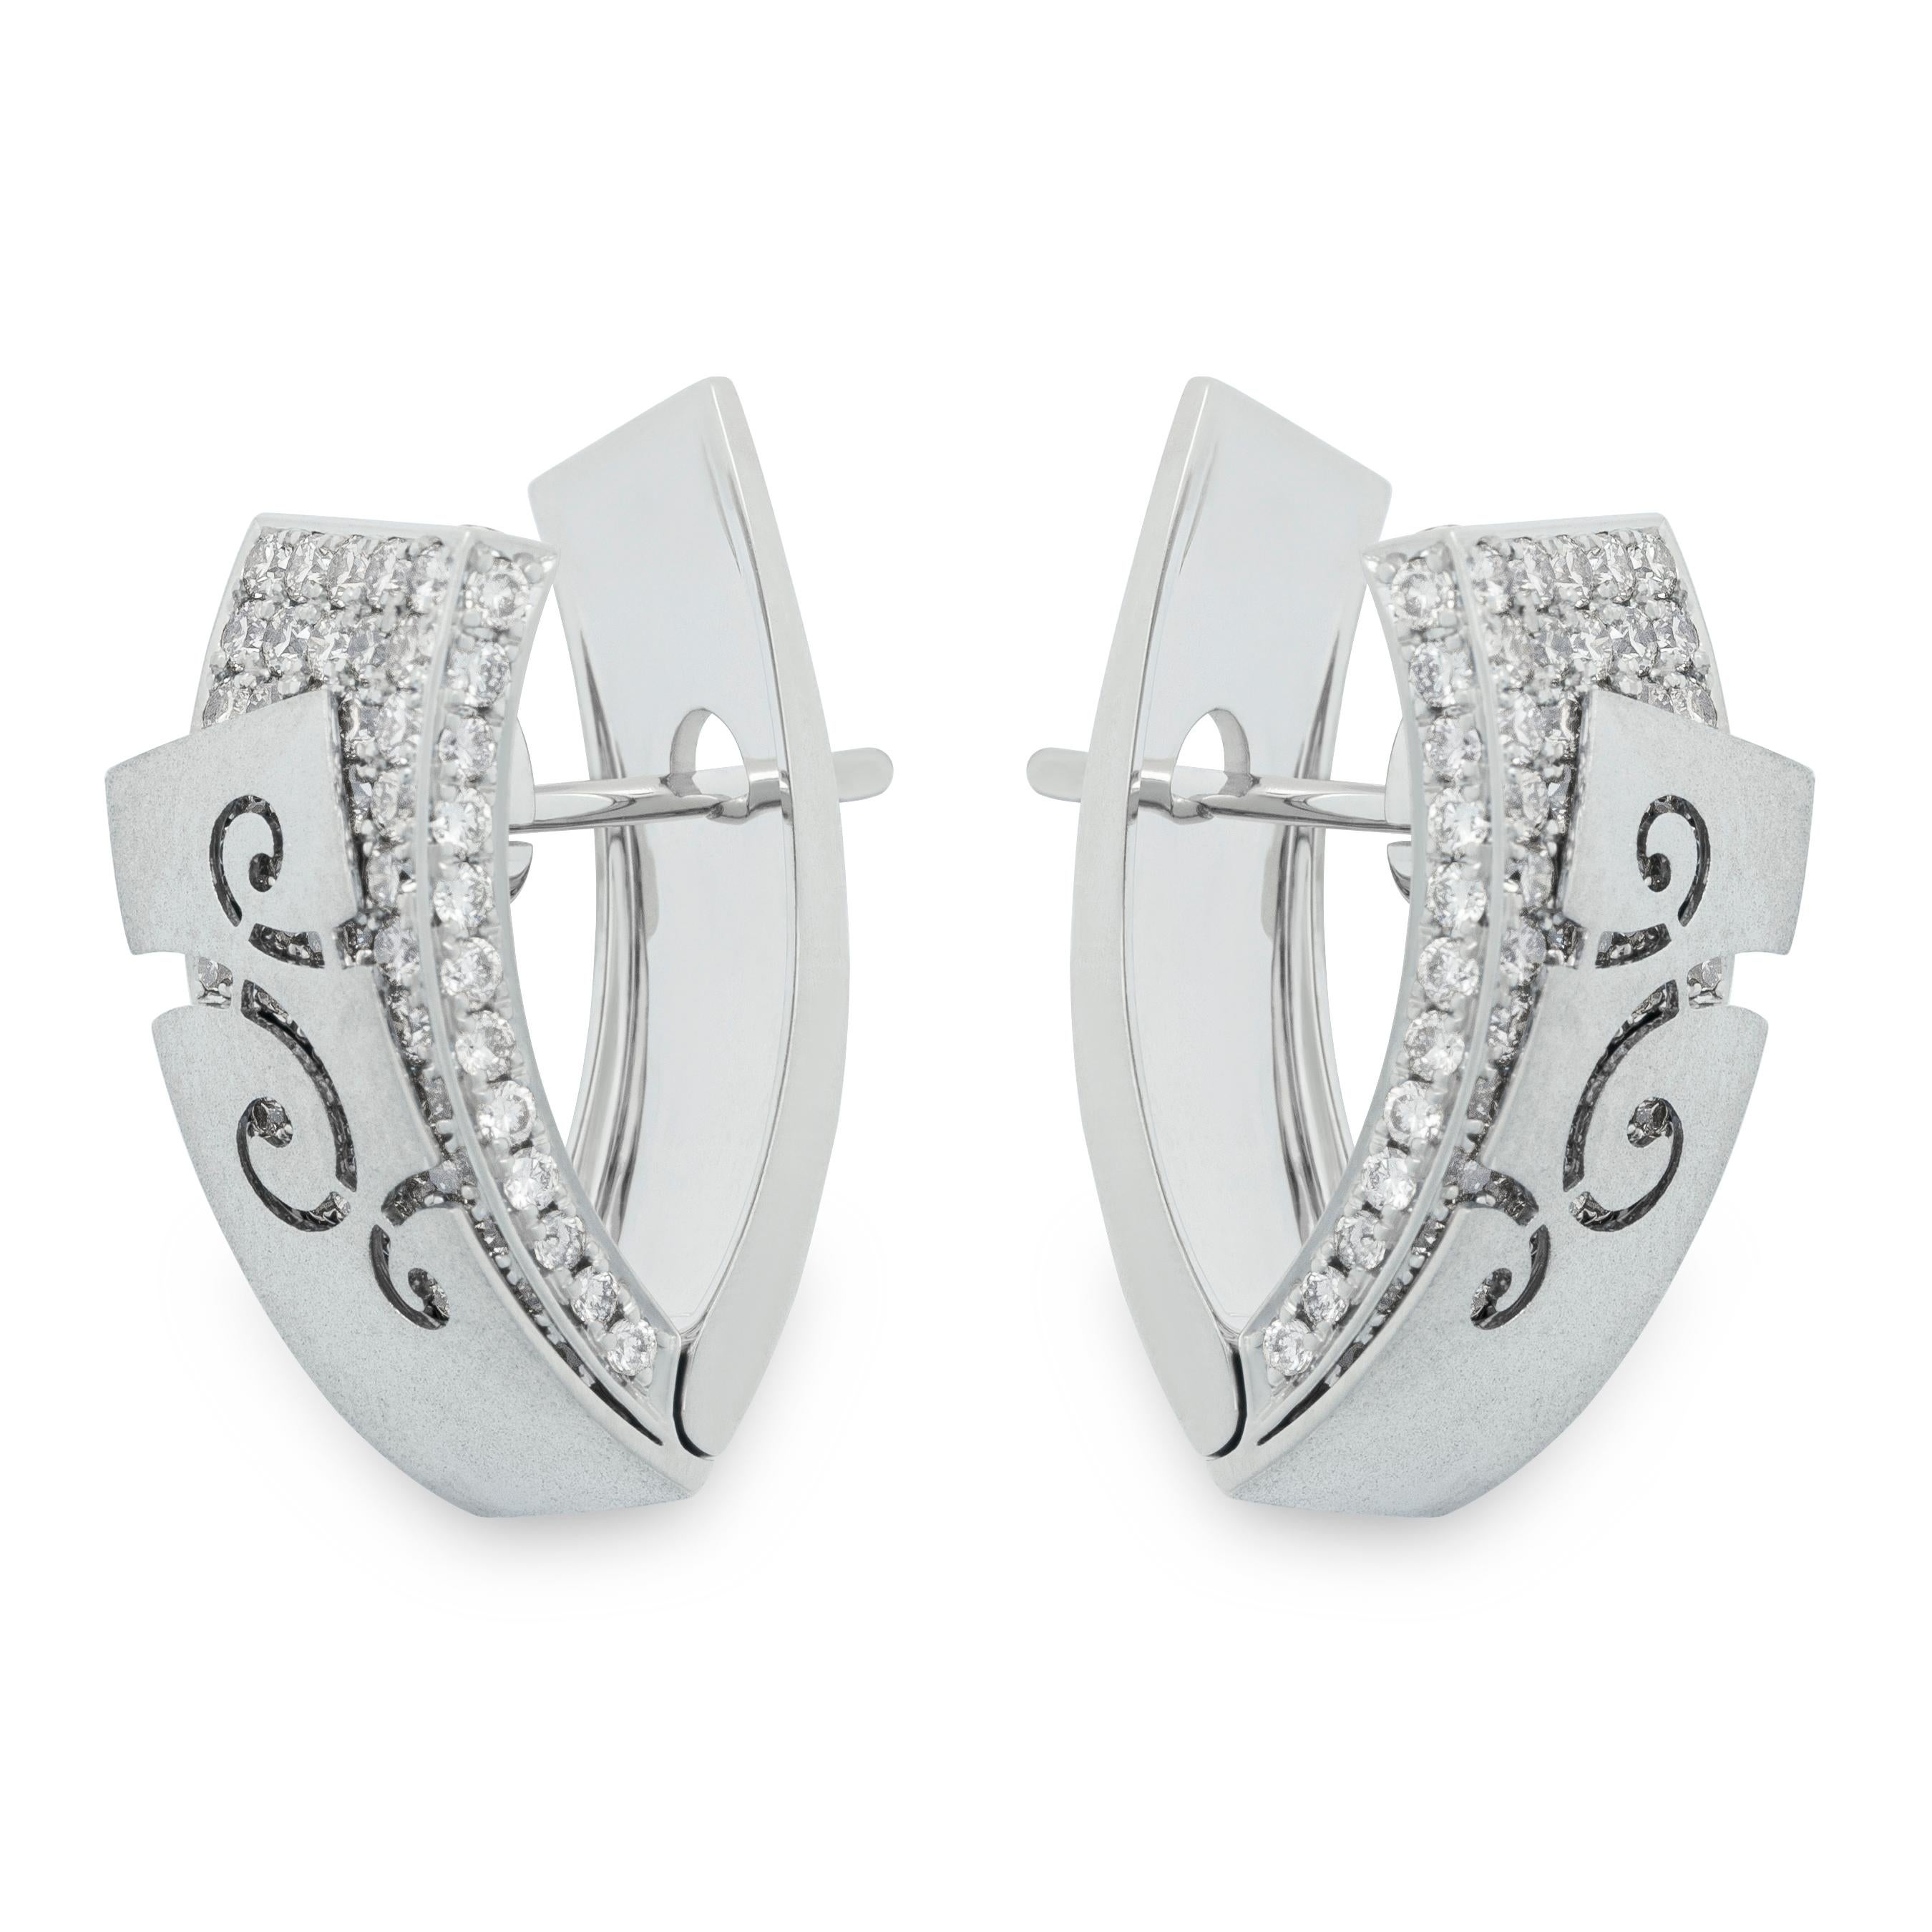 Schleifen-Ohrringe aus 18 Karat Weißgold mit Diamanten

Veil hat unsere Designer zu dieser Schmuckserie inspiriert. Diese Ohrringe zum Beispiel scheinen zwei Schichten zu haben. Die erste Schicht ist ein 